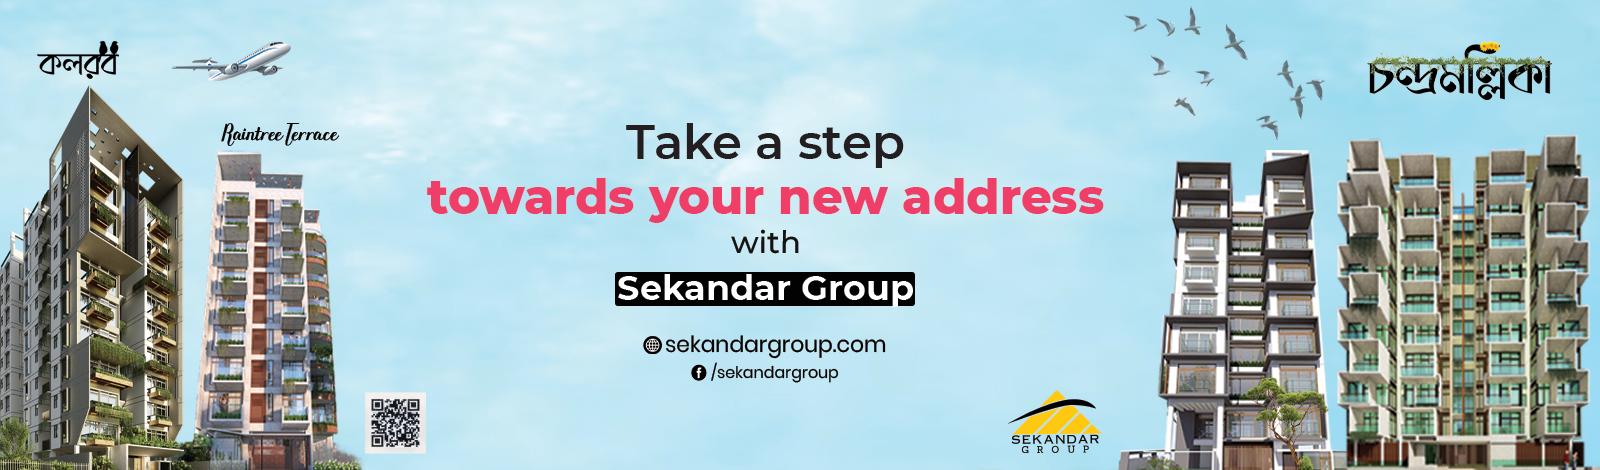 Sekandar Group banner